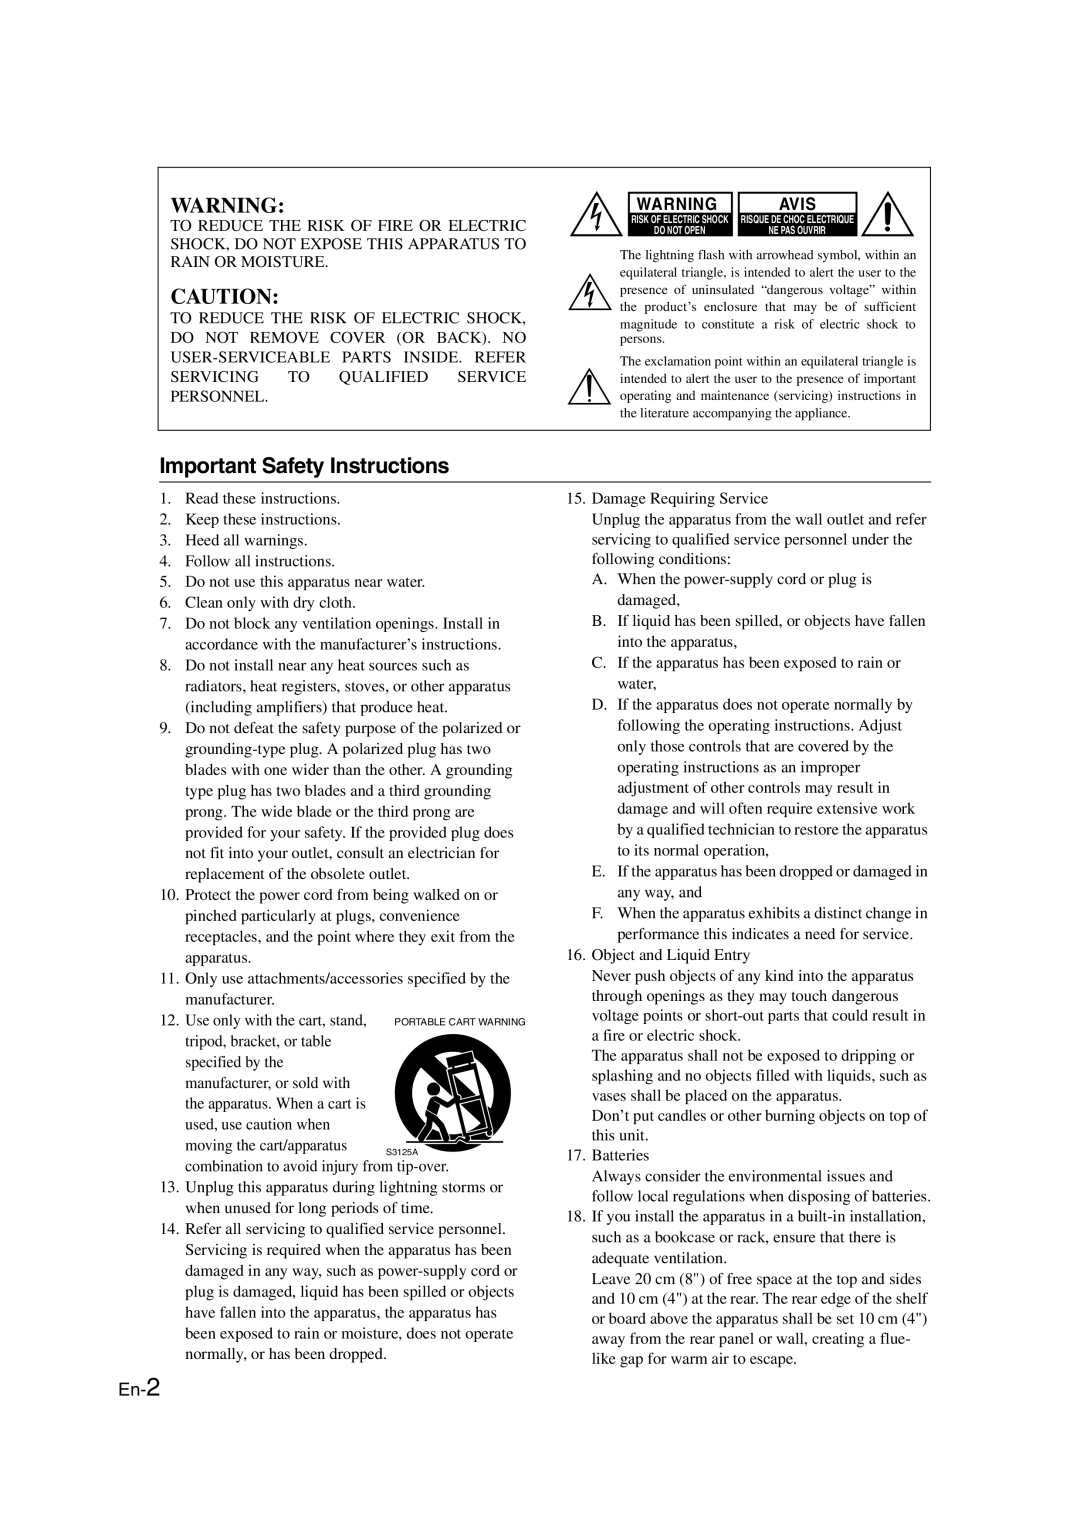 Onkyo HT-RC160 instruction manual Avis, En-2 